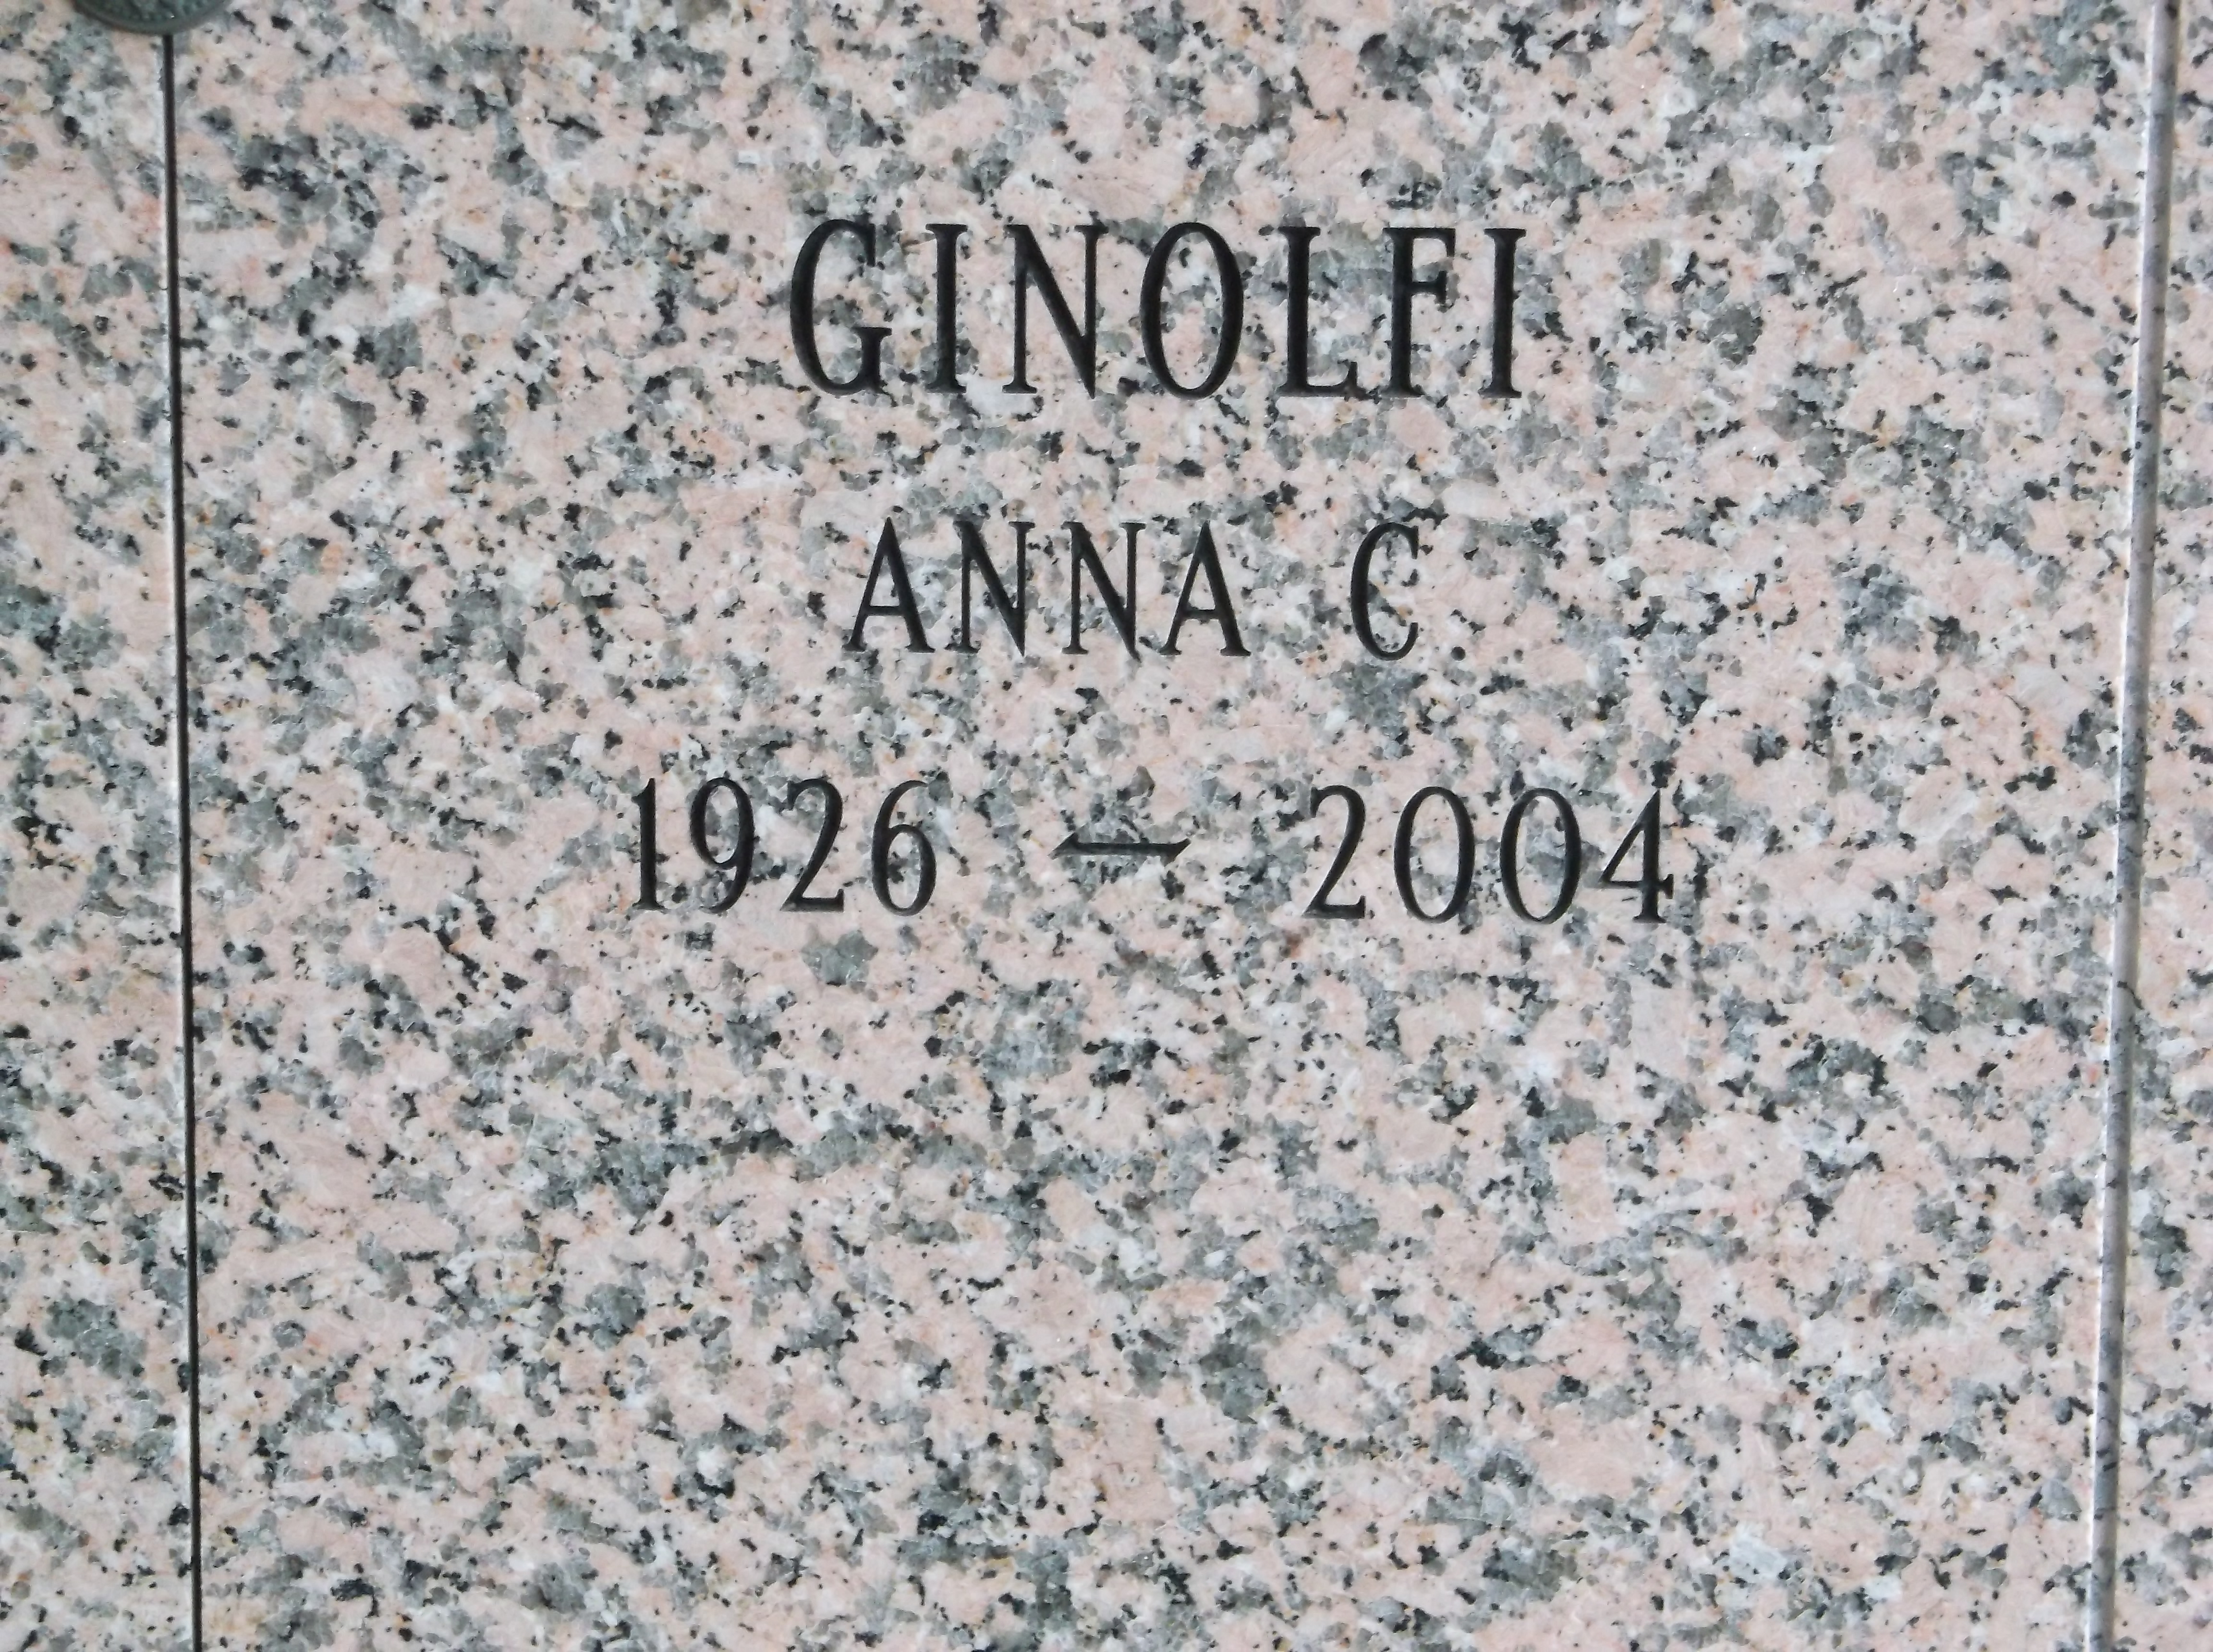 Anna C Ginolfi